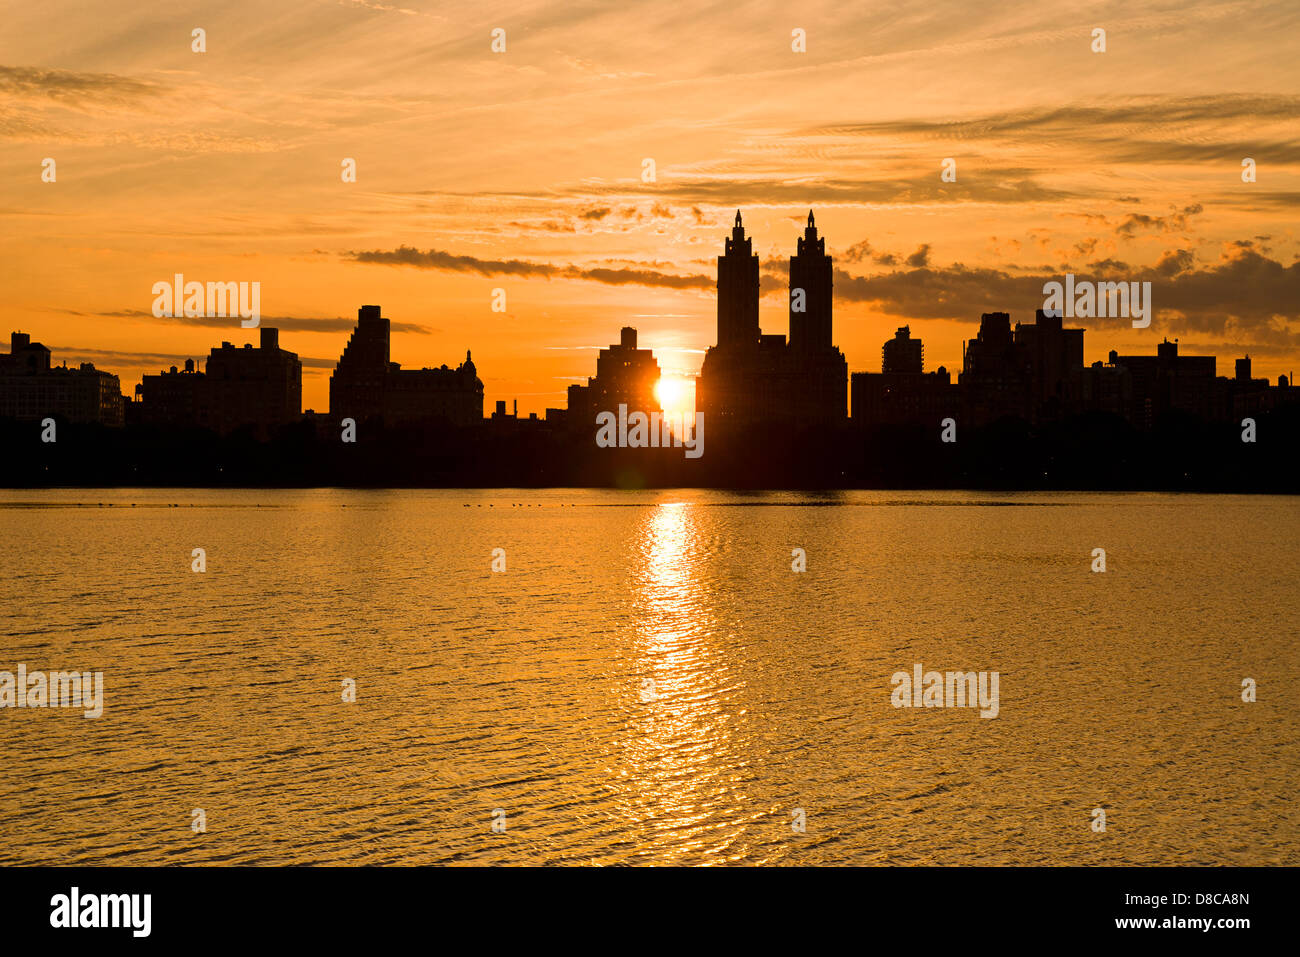 Silhouette de Central Park West skyline et El Dorado Apartment Building, le réservoir, Central Park, Manhattan, New York. Banque D'Images